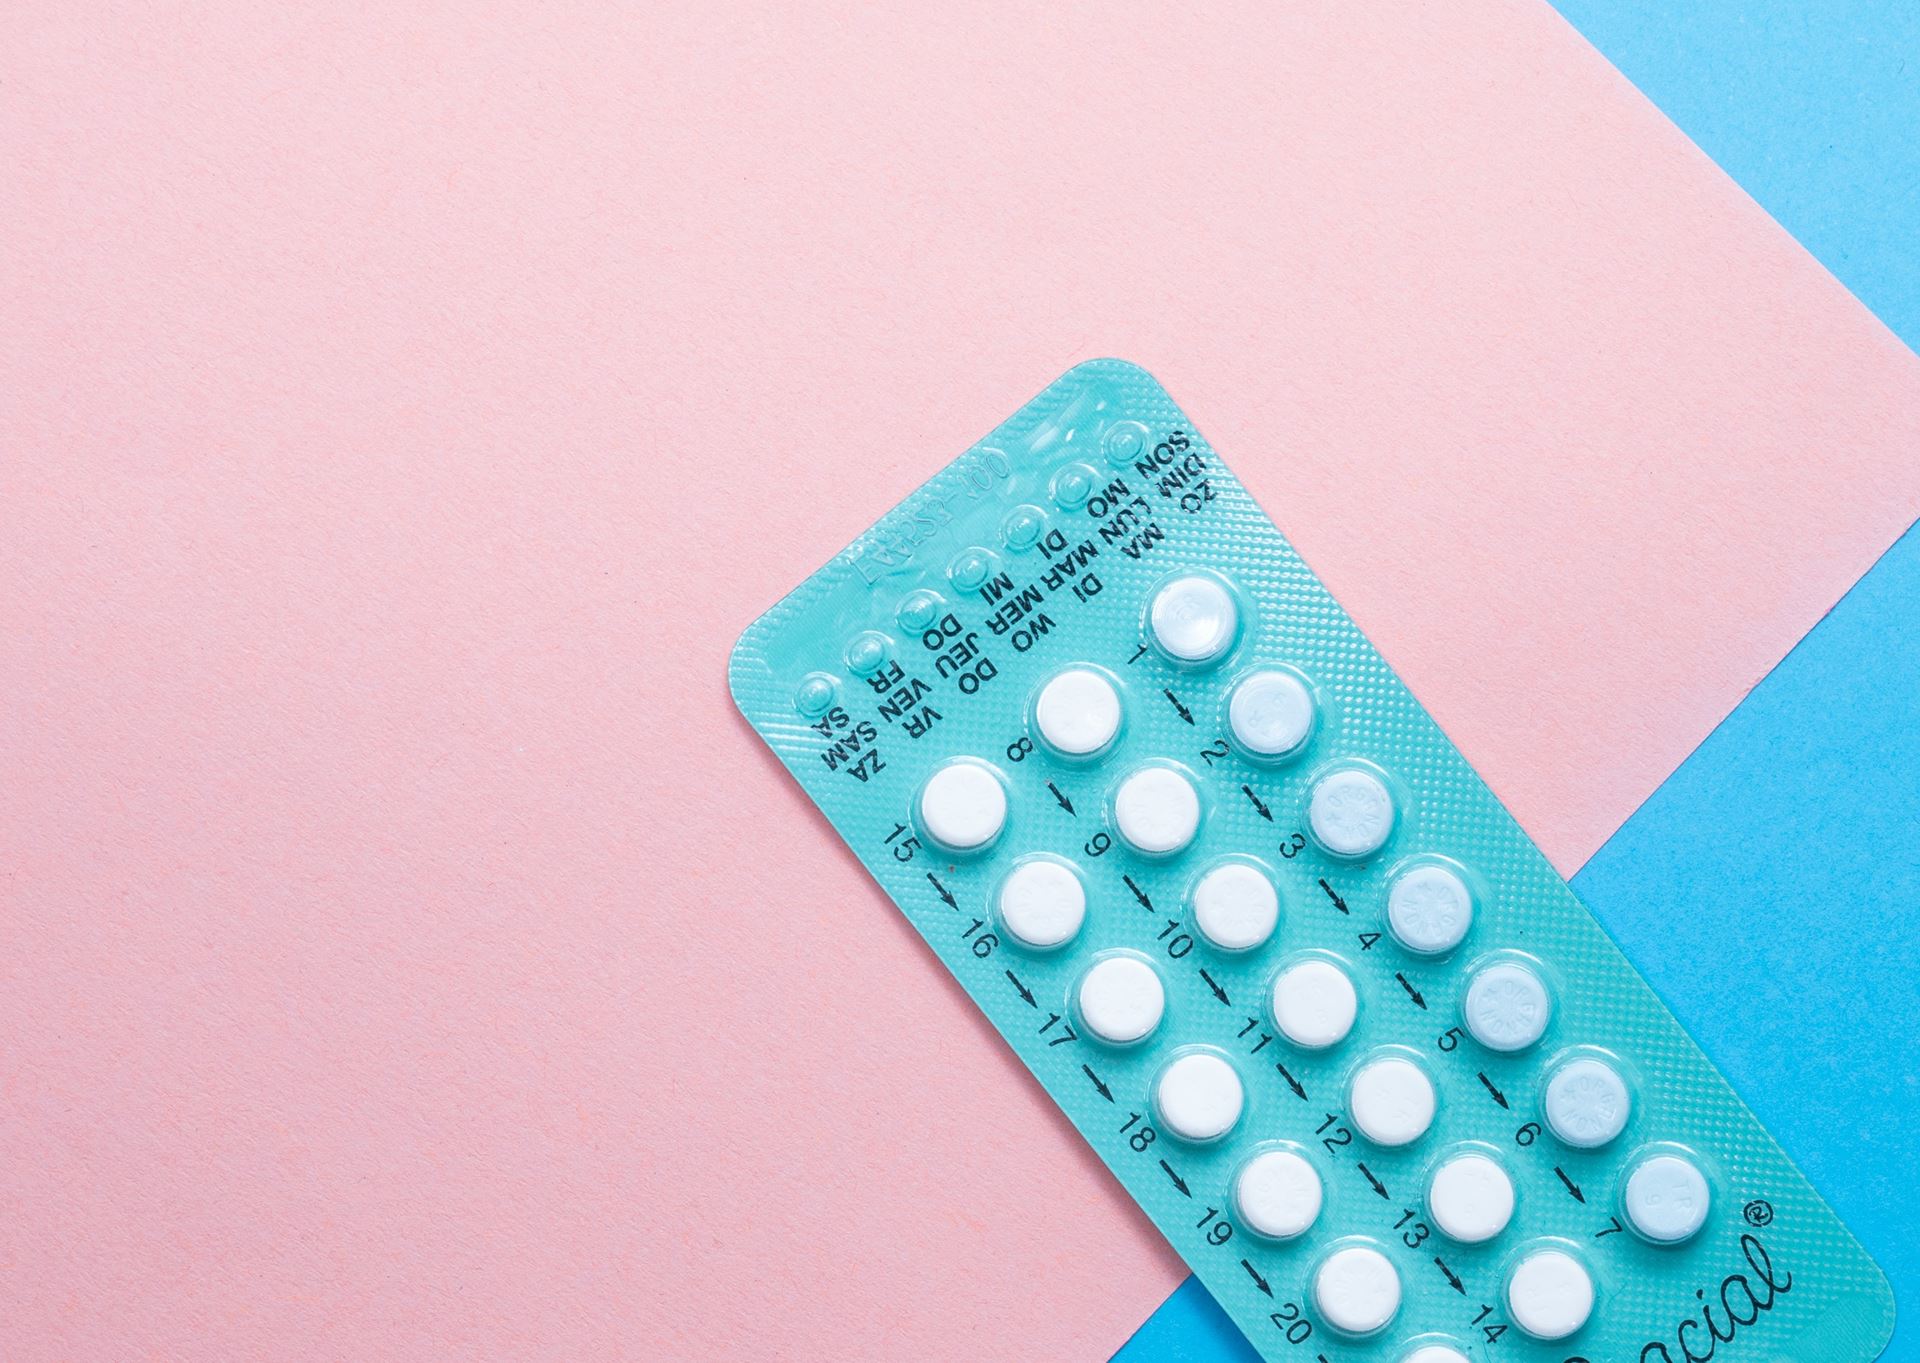 contraceptive pill picture